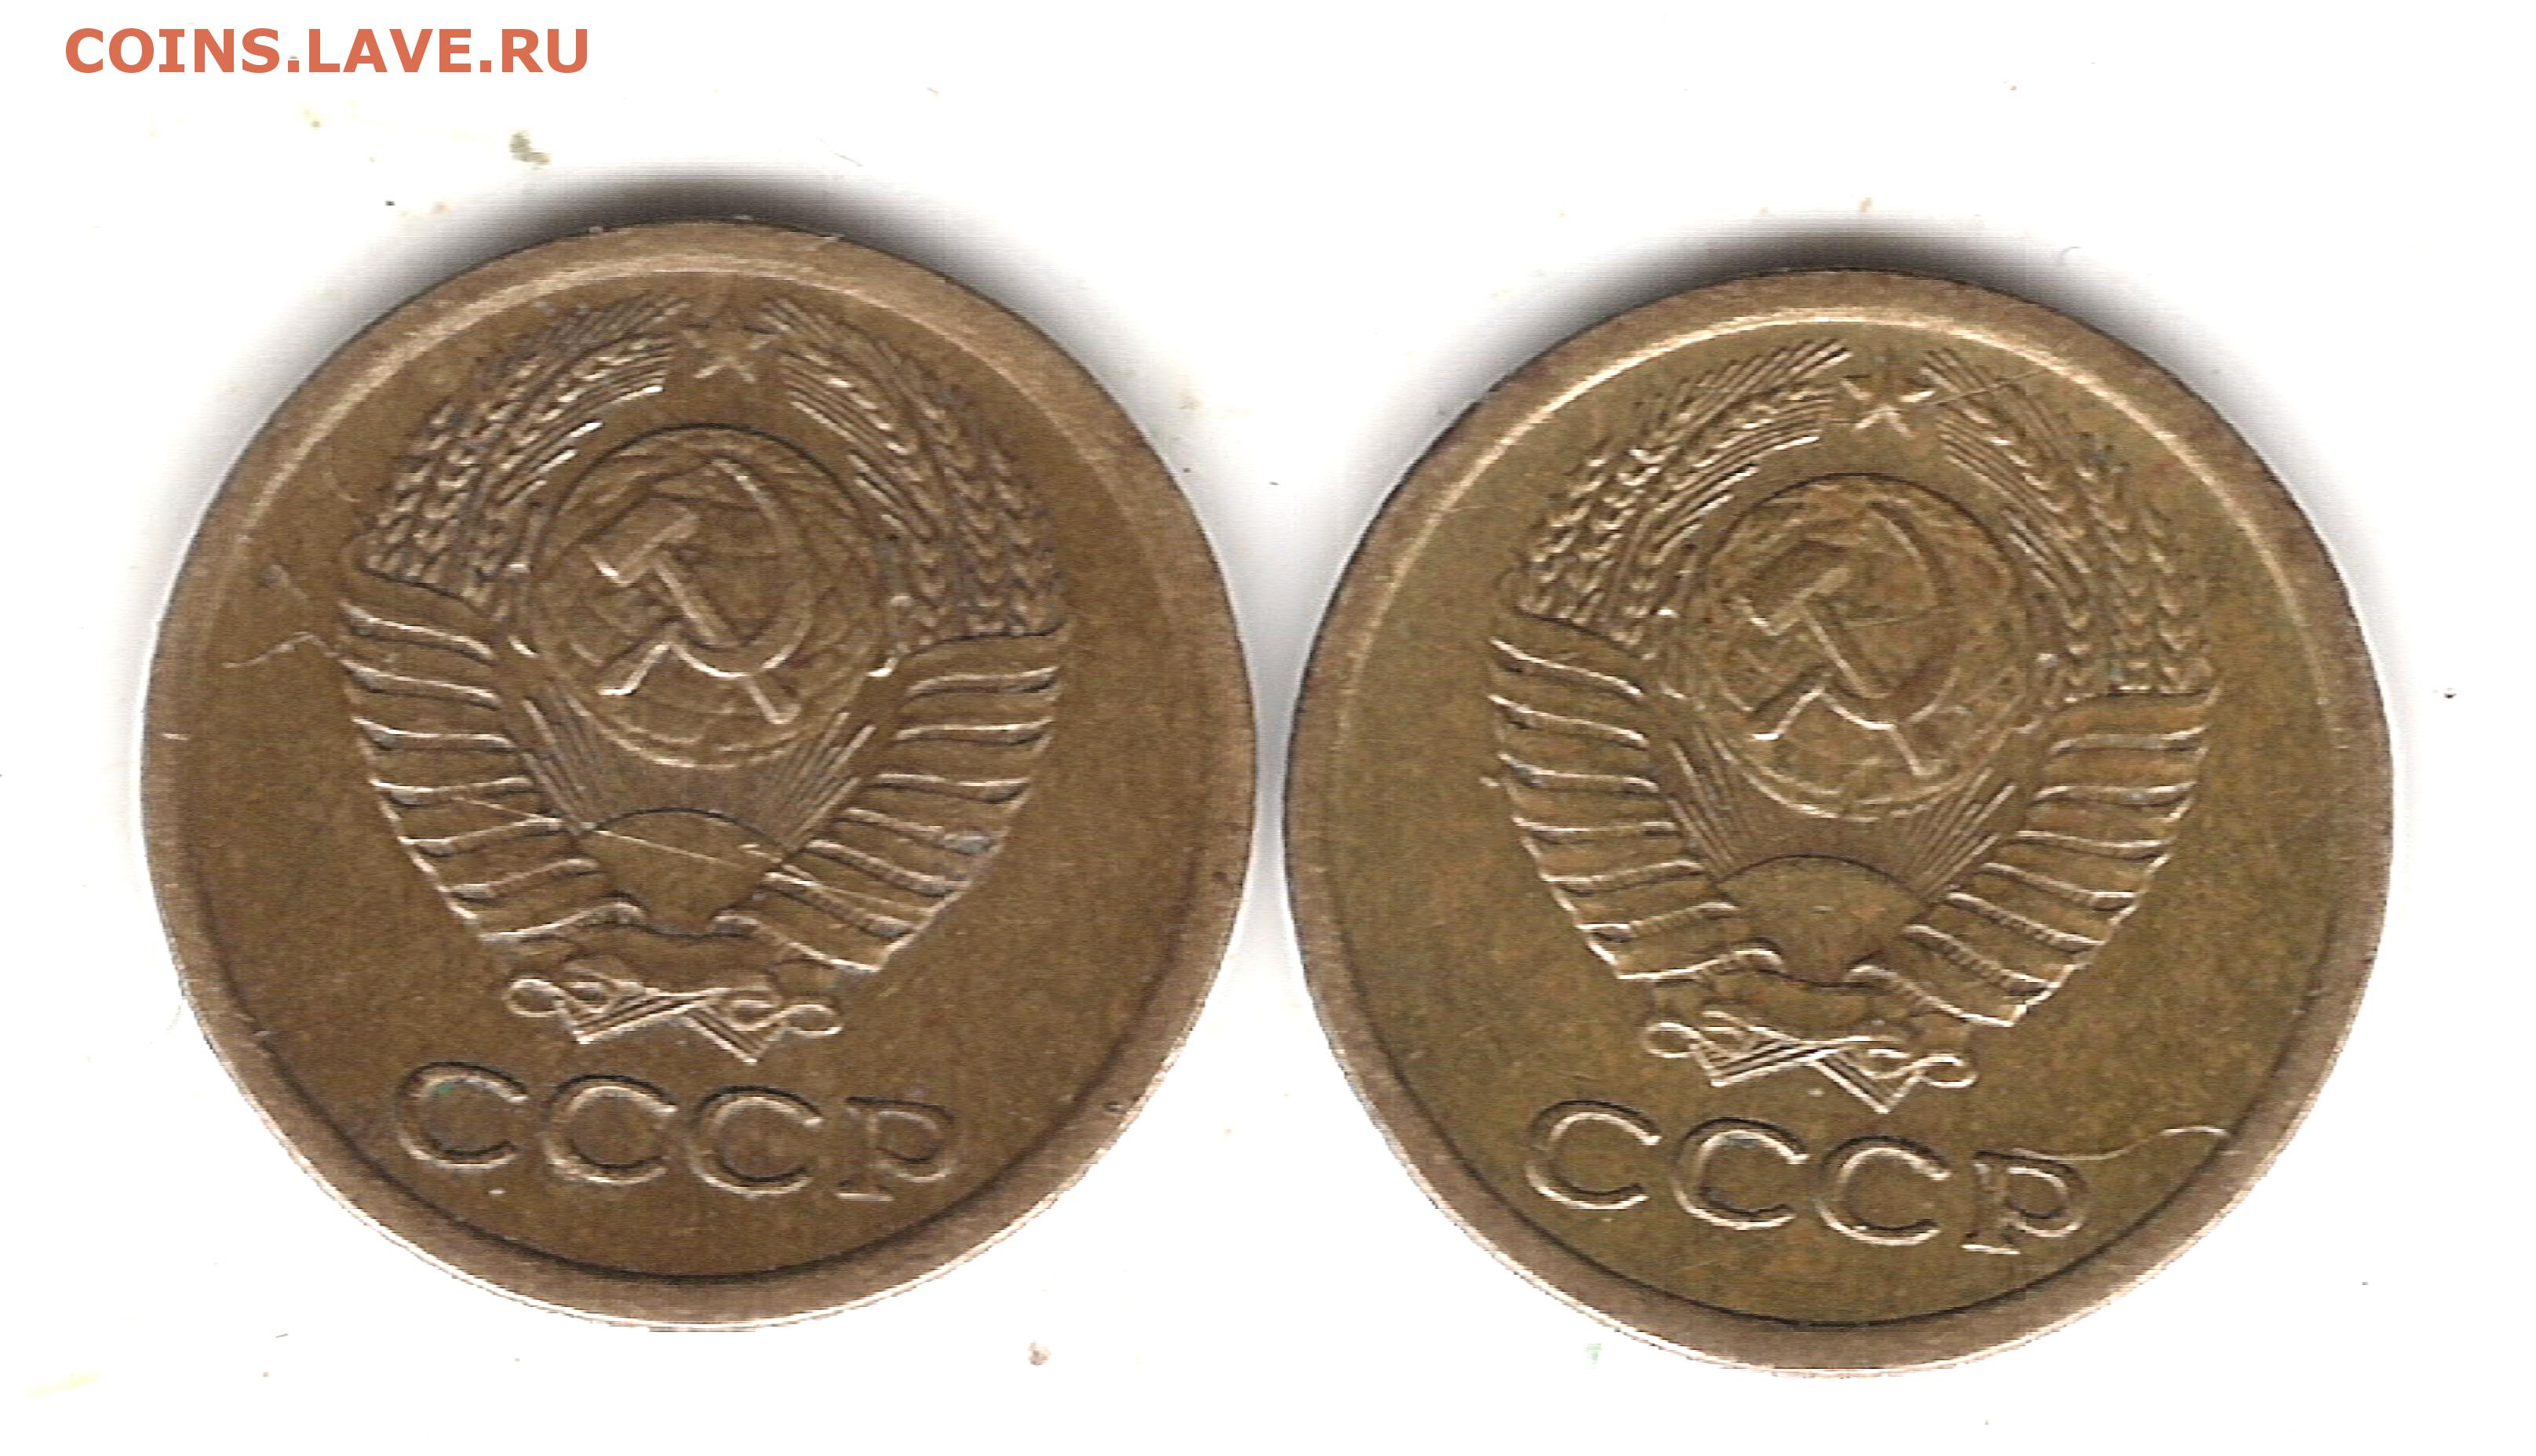 Монеты 1984 года стоимость. 1 Копейка 1984. Внутренние колосья с длинными остями 1 копейка. Короткие ости на монете 1 копейка 1984. С короткими остями.